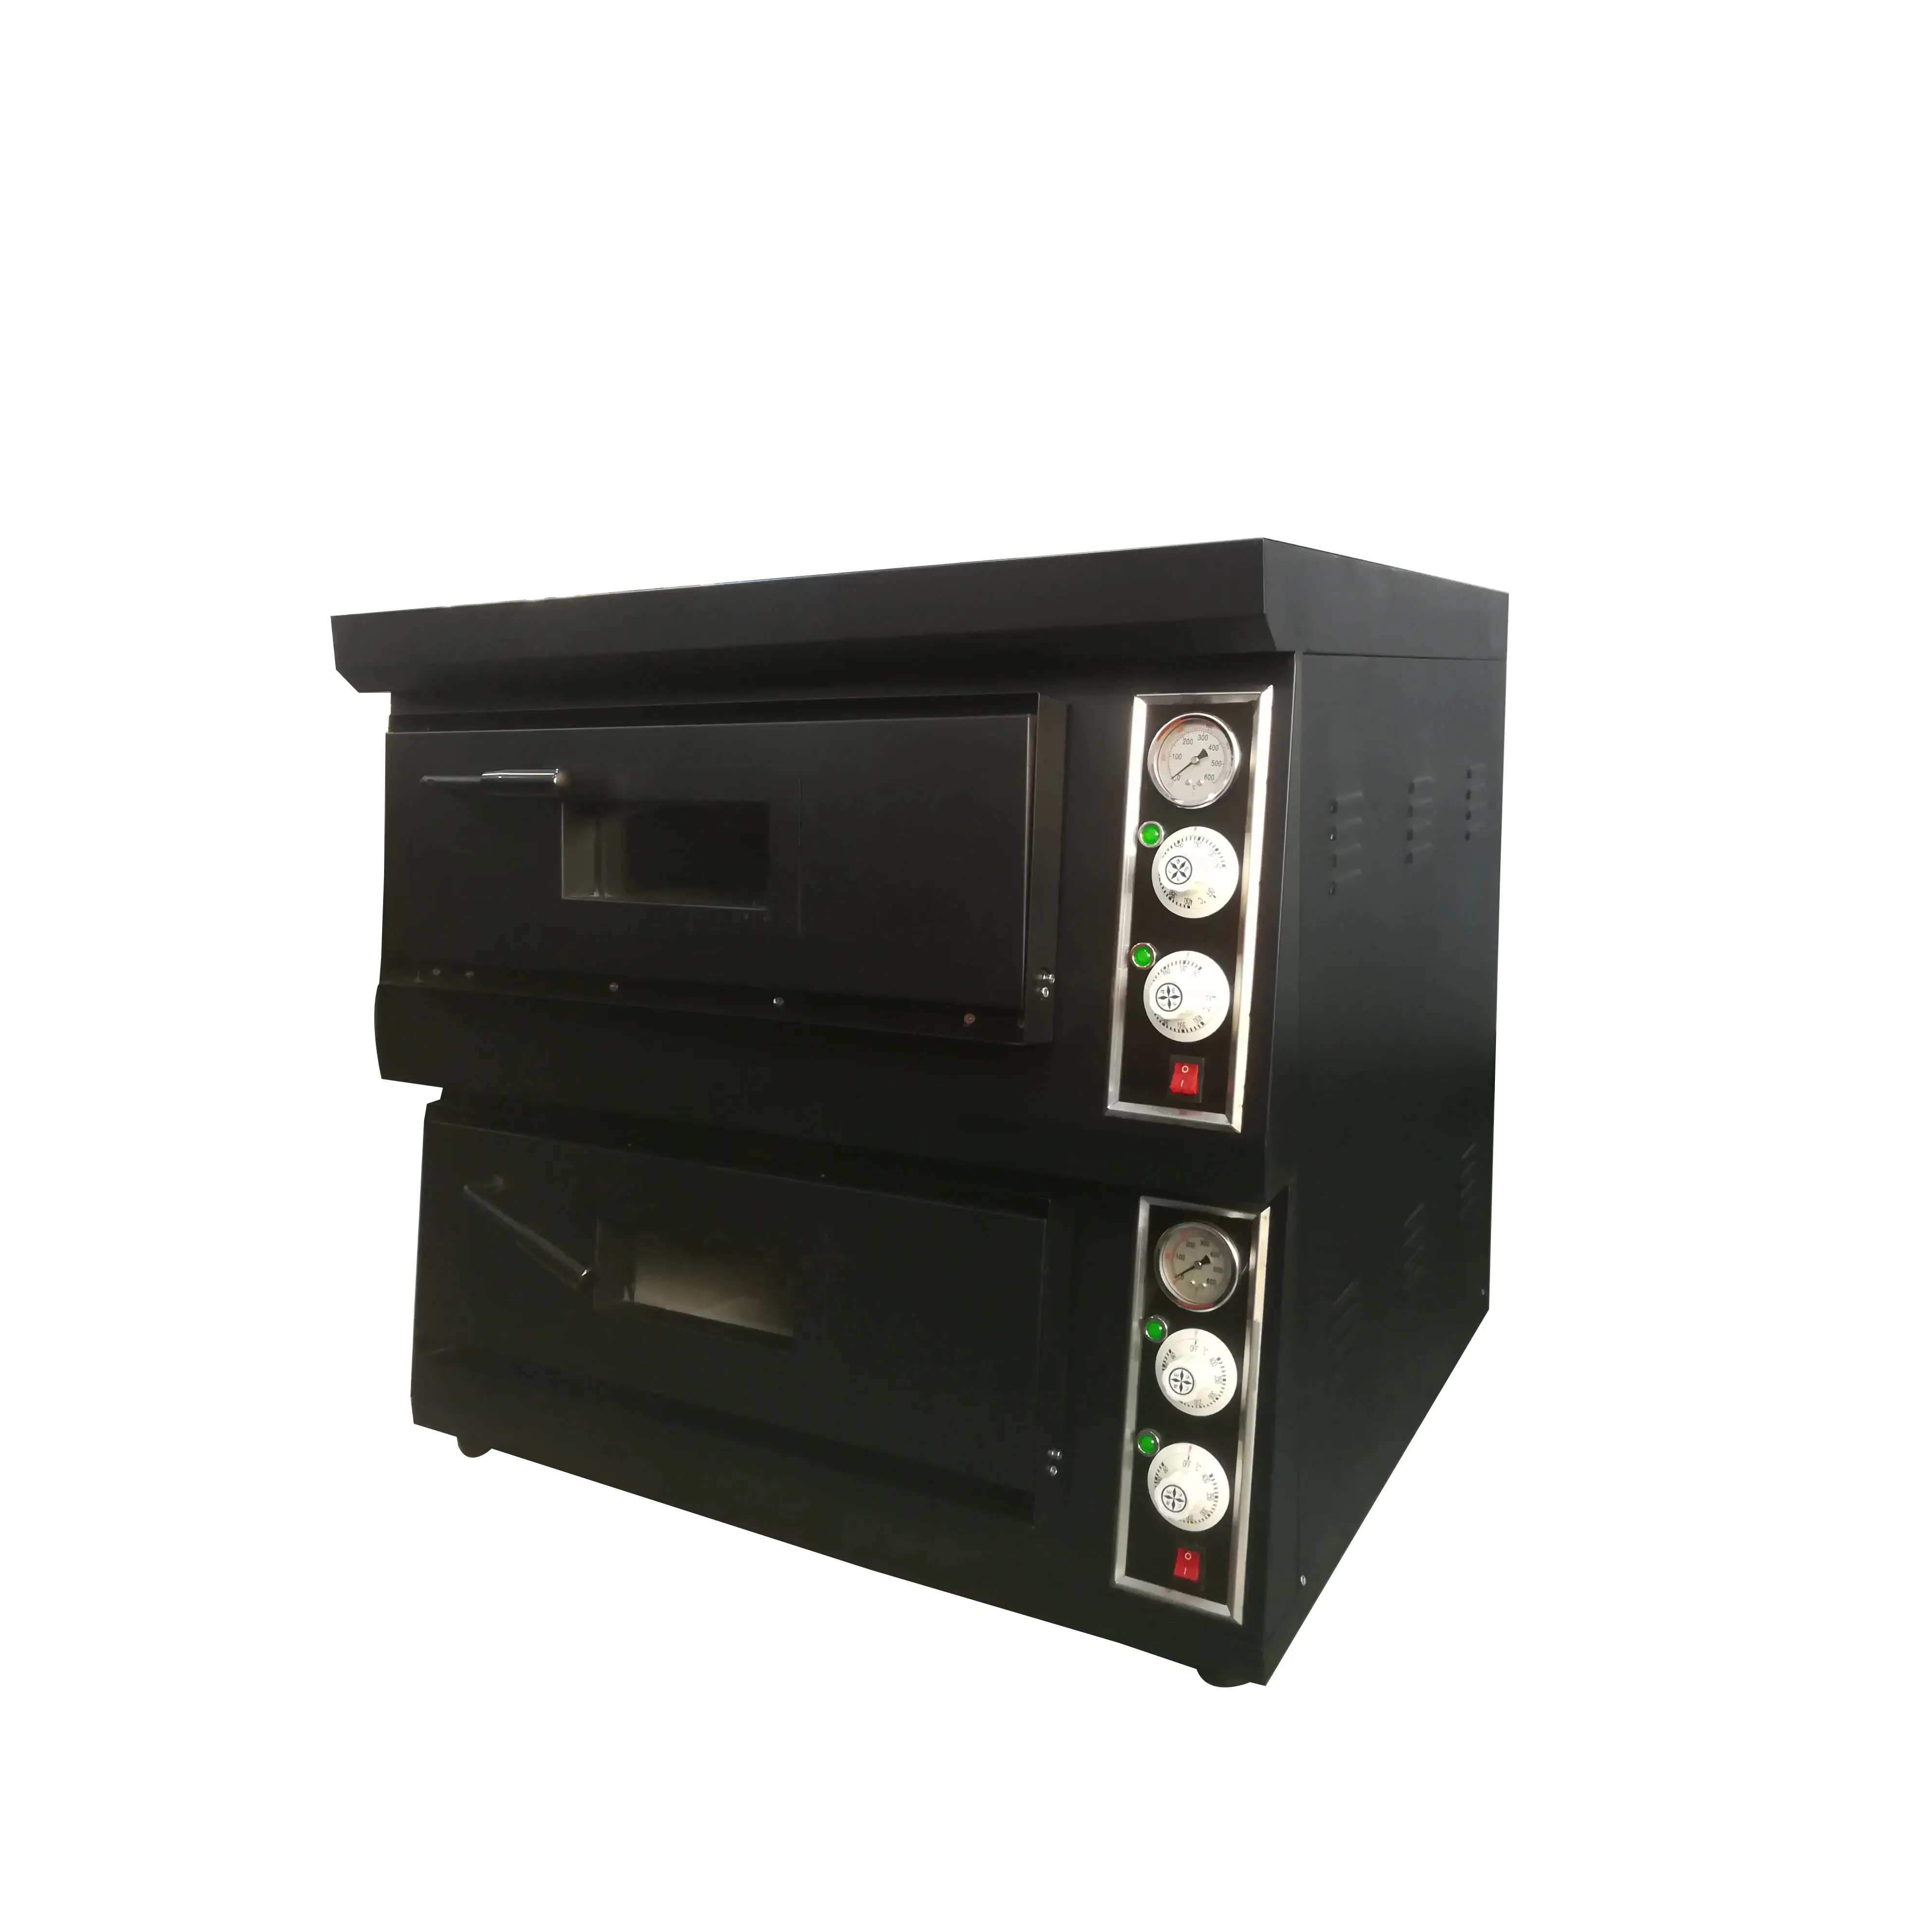 Vendita calda forno elettrico per Pizza, forno per pizza con trasportatore a gas, forno per Pizza (BNP(XK01)2-2)